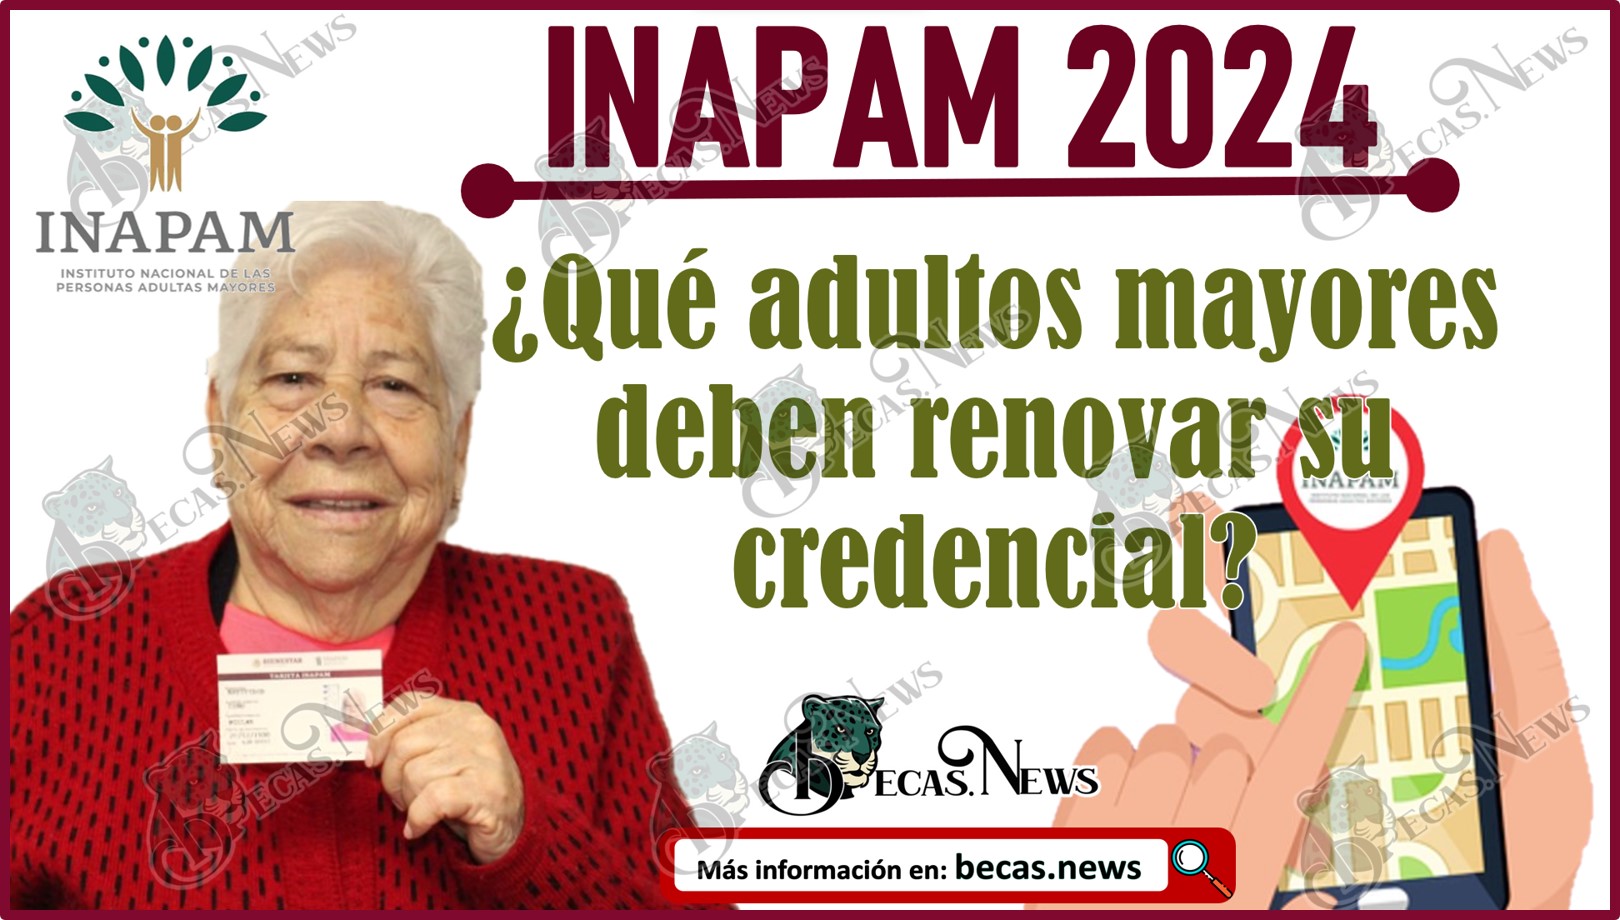 INAPAM 2024: ¿Qué adultos mayores deben renovar su credencial?